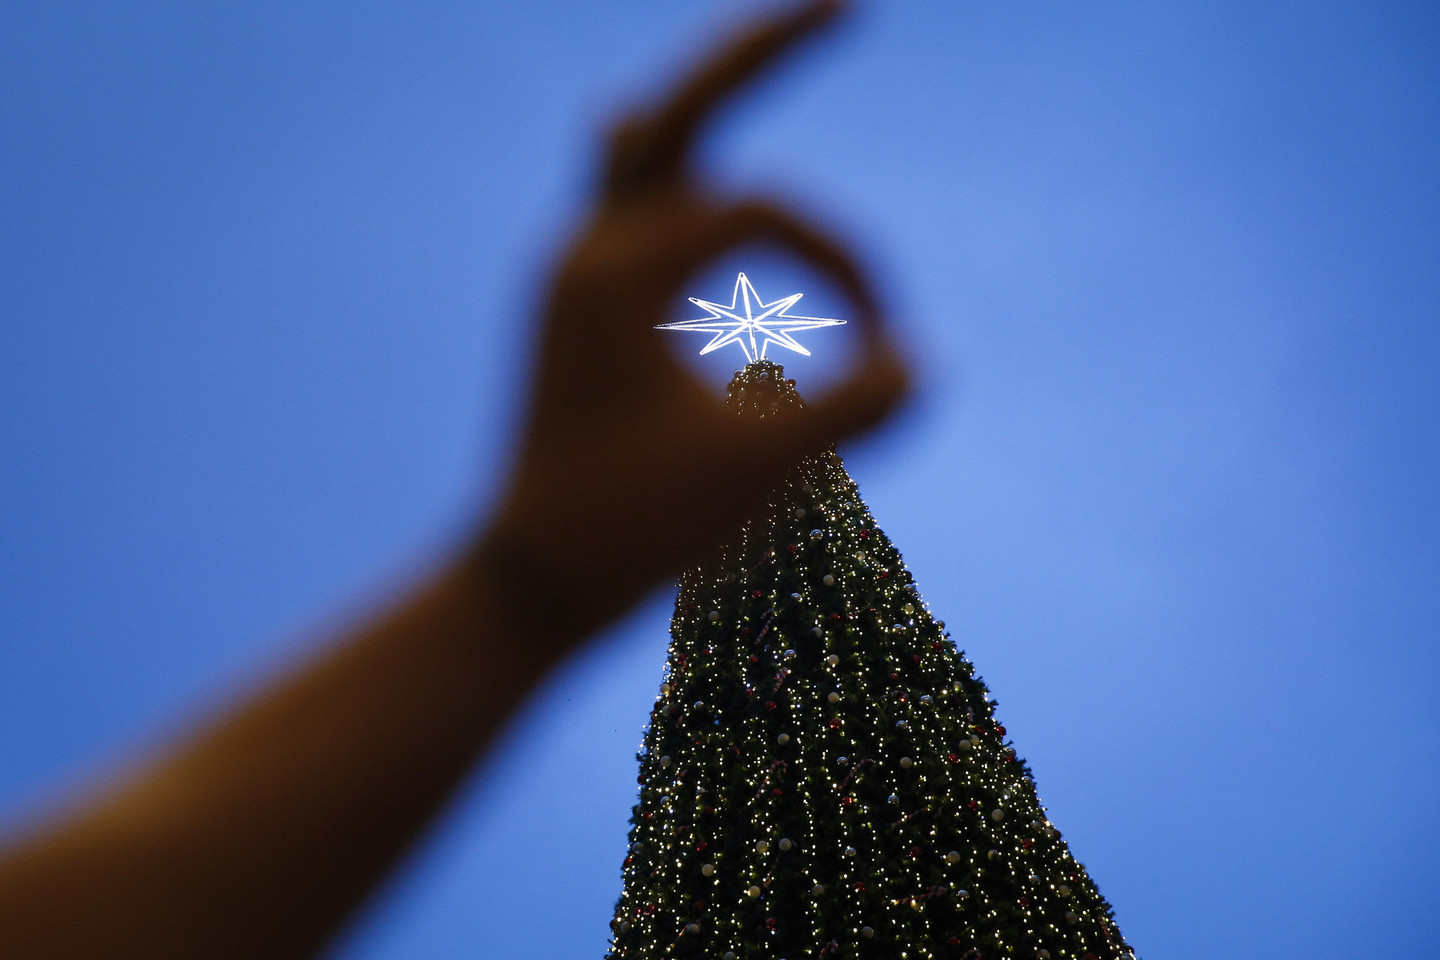 Net jei didžioji gyventojų dalis Kalėdų nešvenčia, daugybė jų fotografuojasi prie dekoracijų ir puošmenų.<br>AP nuotr.